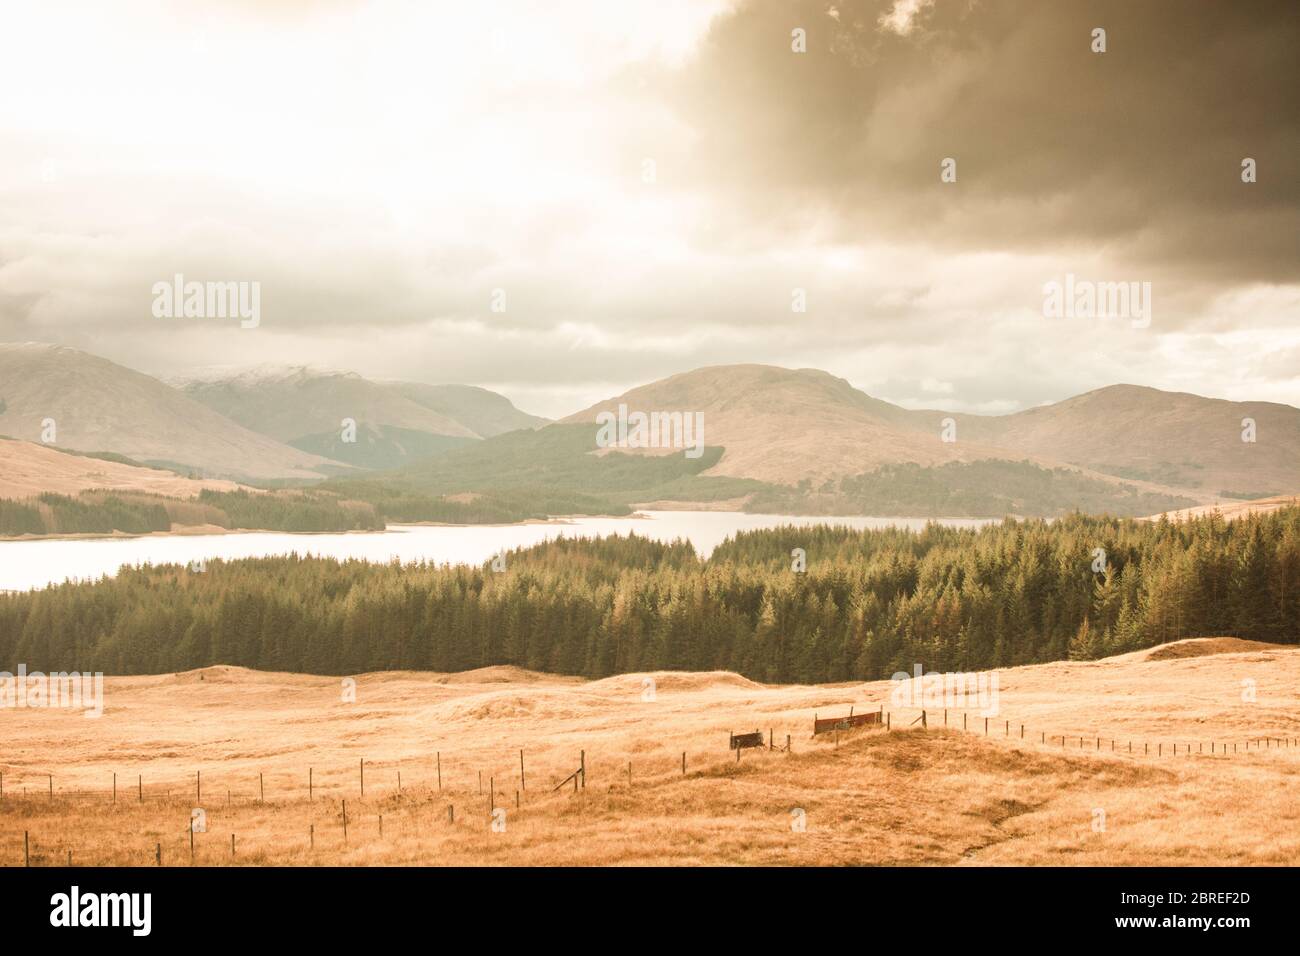 Point de vue sur l'île de Skye en regardant au loin, où une forêt, un lac, des prairies et des collines de vie. Banque D'Images